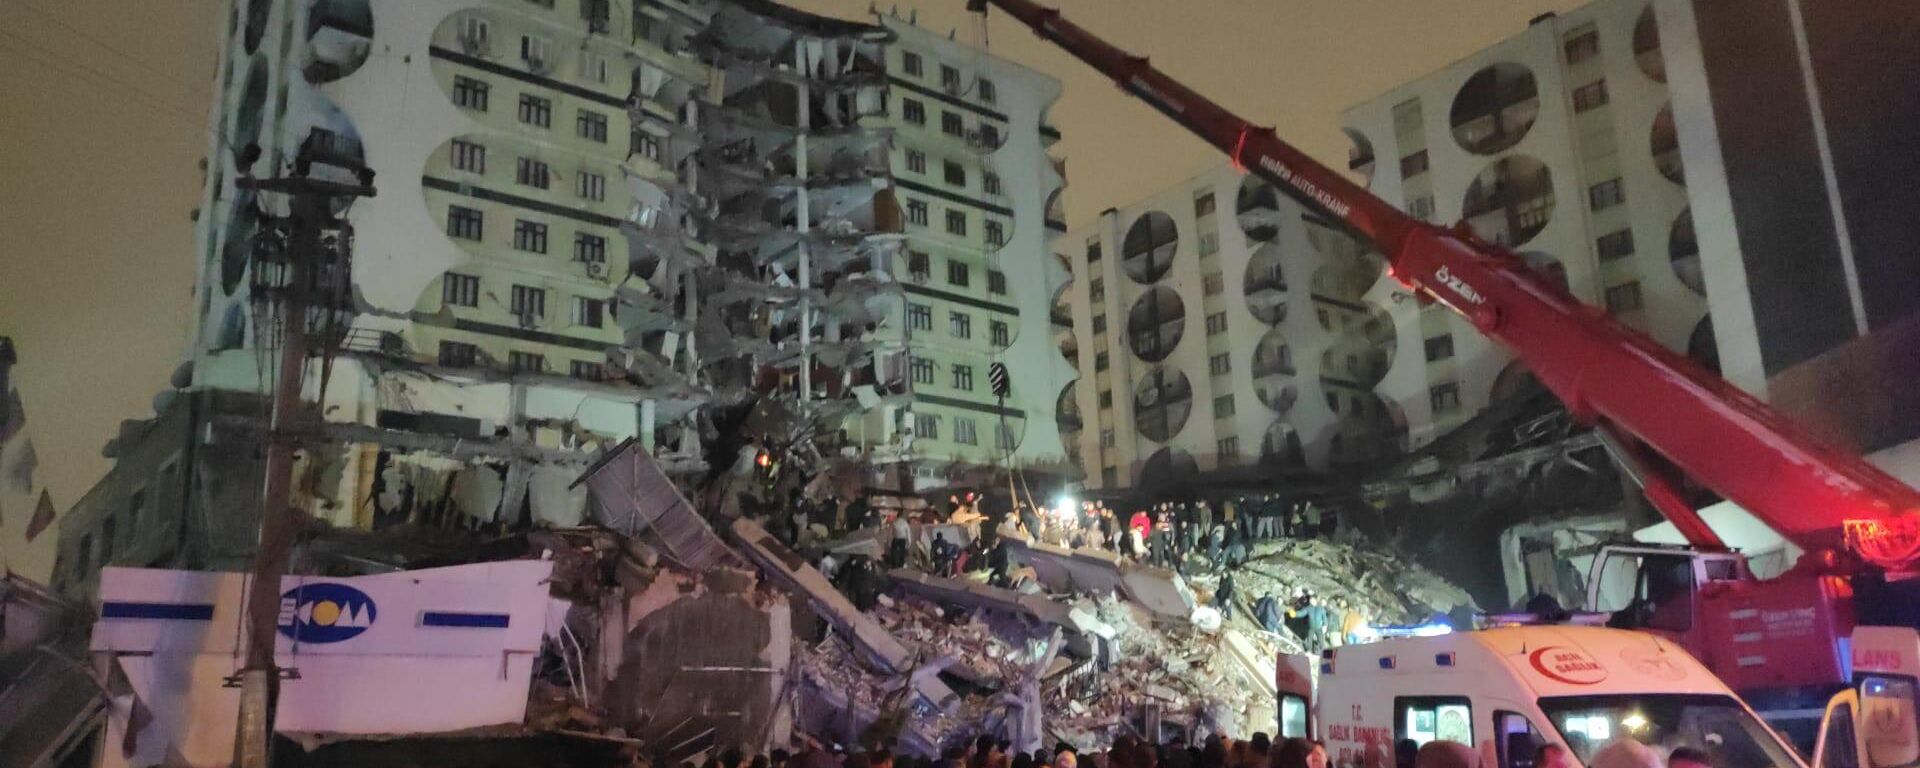 Kahramanmaraş'ın Pazarcık ilçesinde 7,4 büyüklüğünde meydana gelen deprem nedeniyle Diyarbakır'da bazı binalar yıkıldı. Enkazda arama kurtarma çalışması başladı. - Sputnik Türkiye, 1920, 06.02.2023